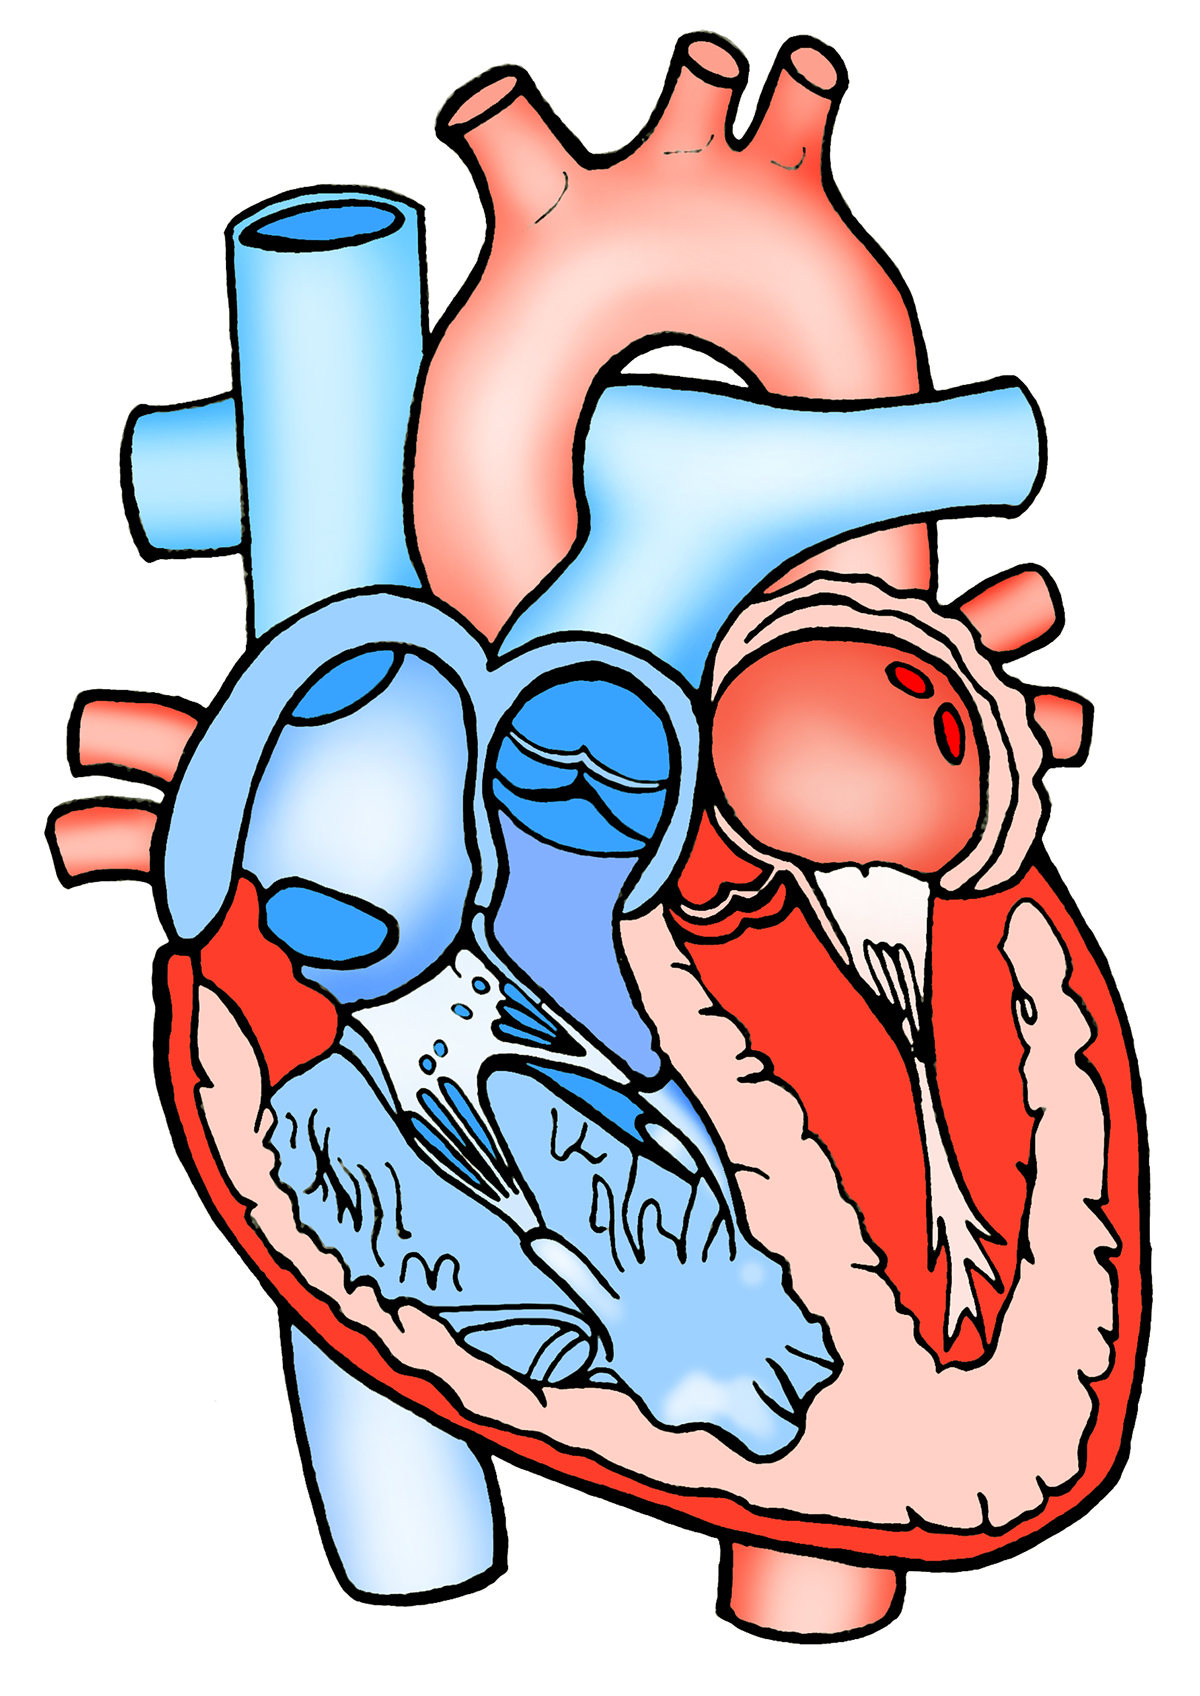 anatomie arteriole biologie bloedvaten bovenste niercapsule geneeskunde gezondheid grote nierkelk inwendig inwendige kleine nierkelk lichaam medisch intestins